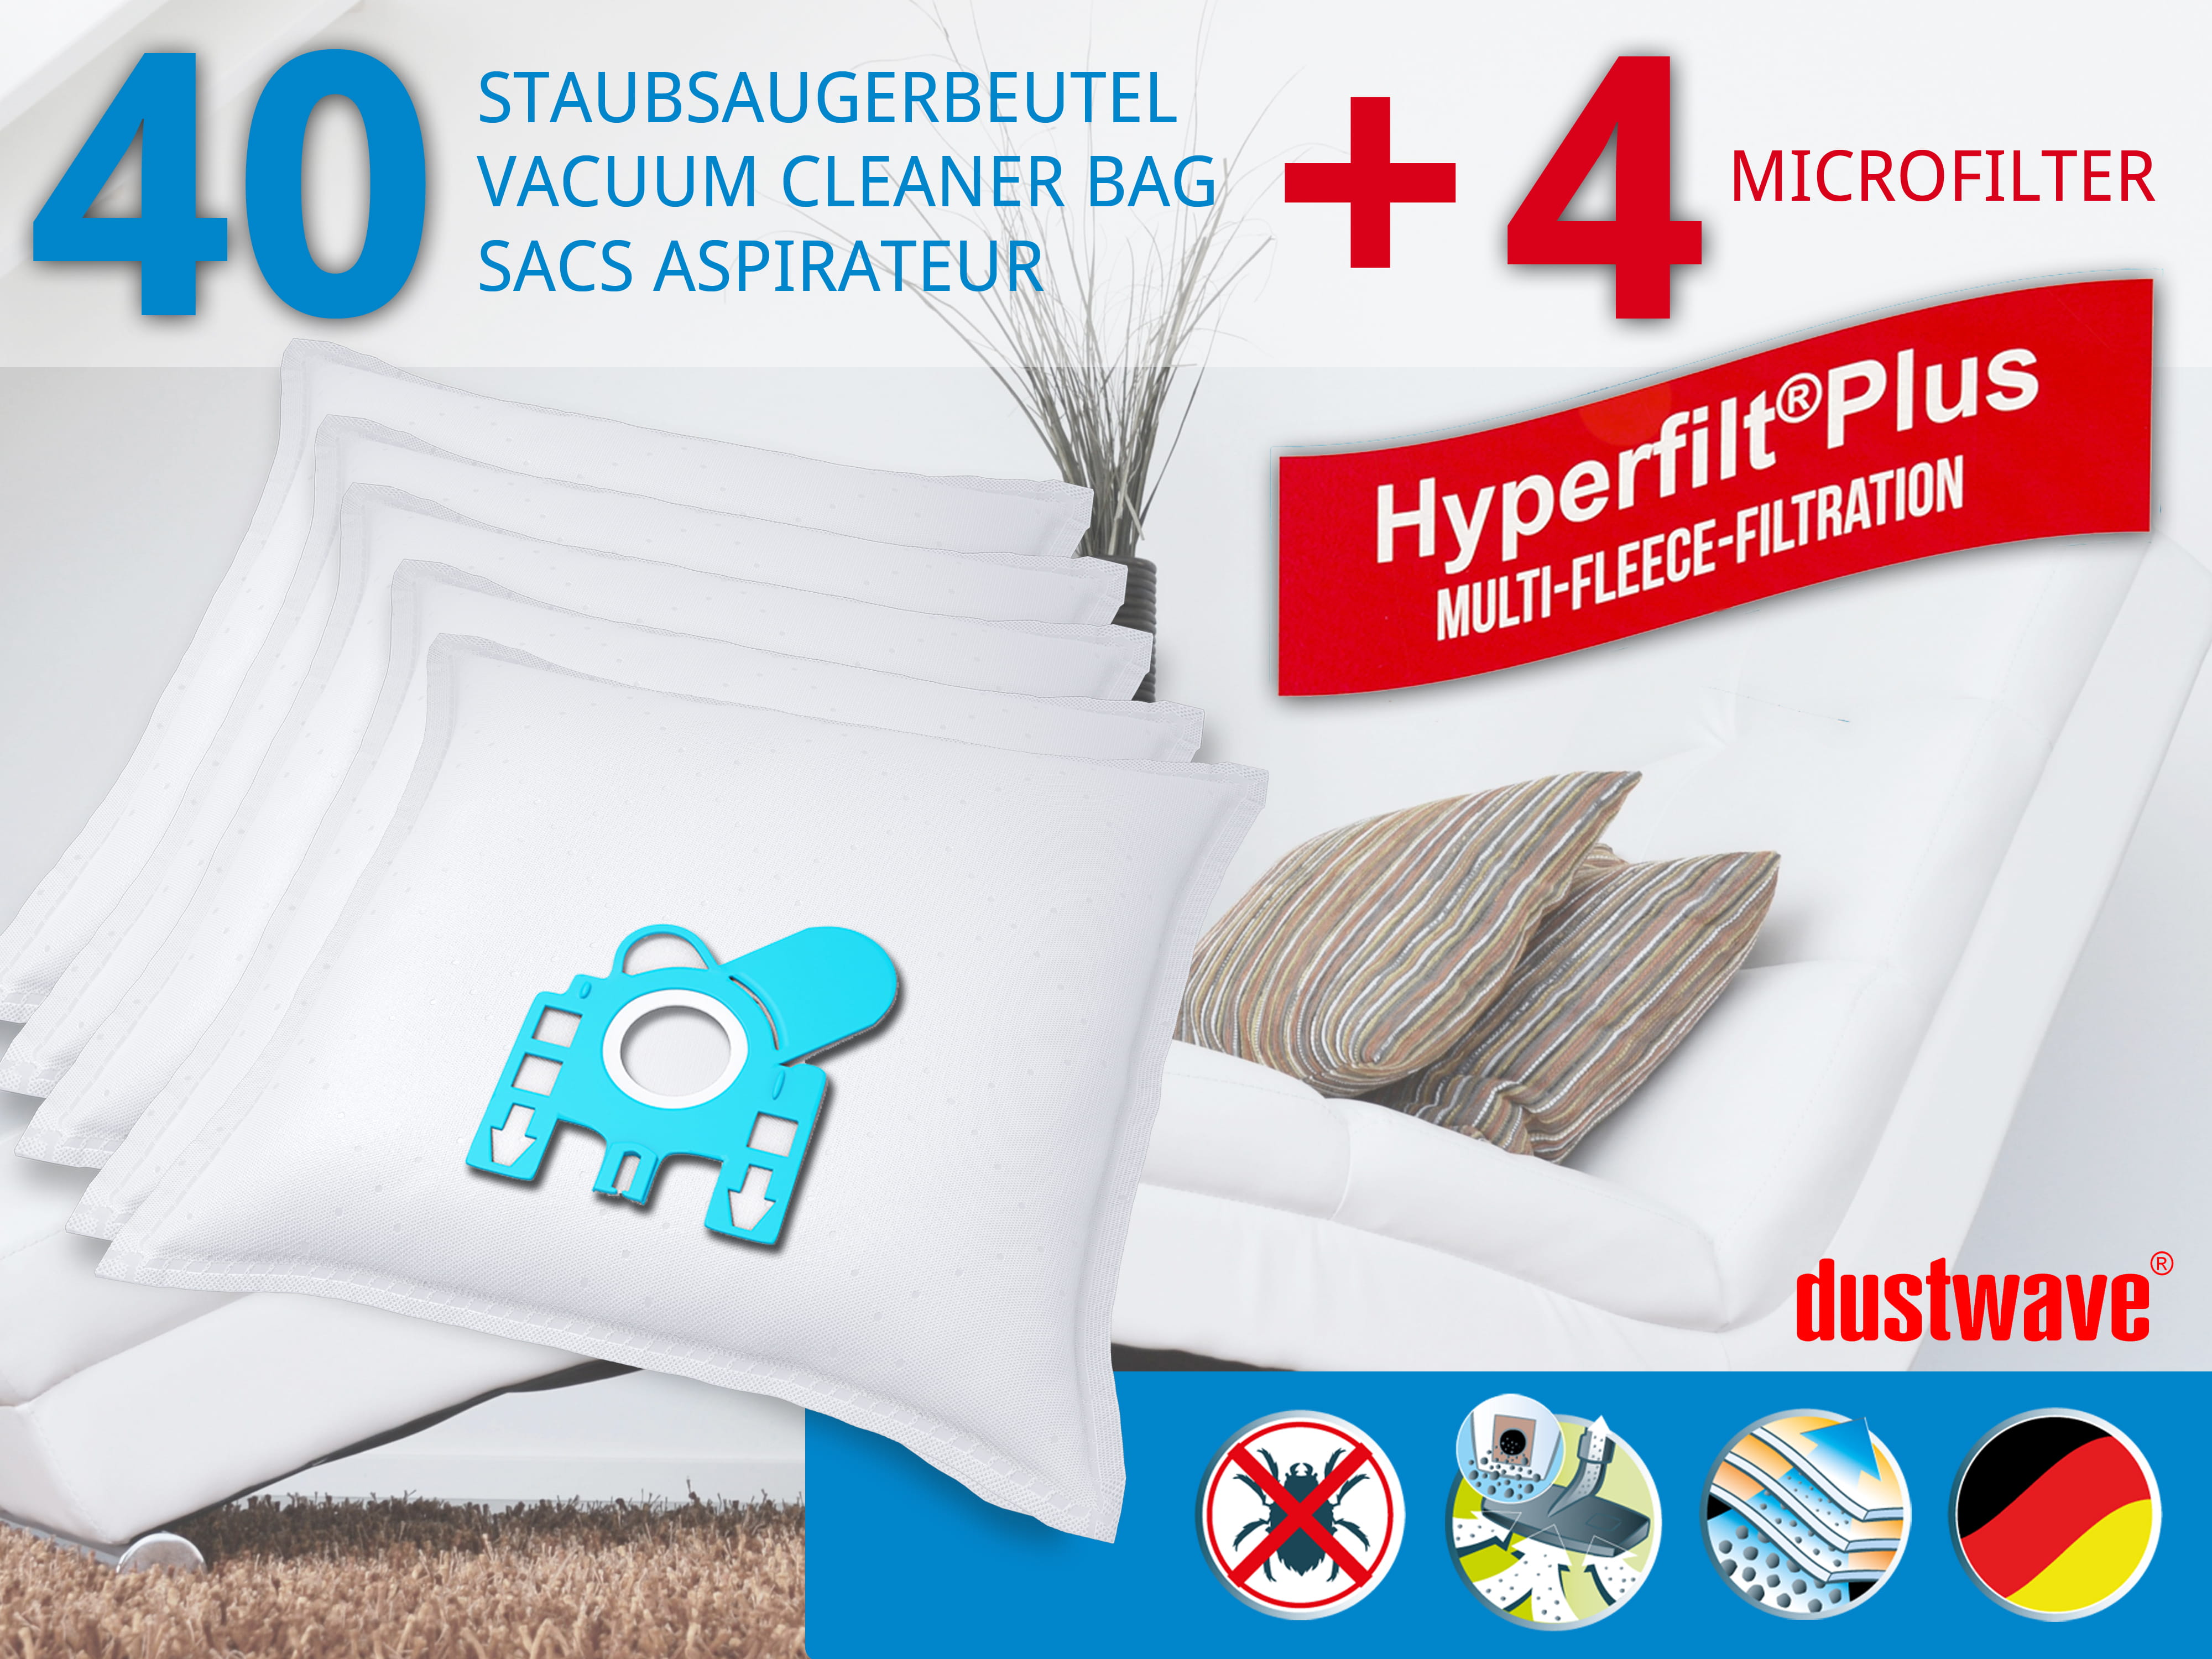 Dustwave® 40 Staubsaugerbeutel für Hoover 39000228 - hocheffizient, mehrlagiges Mikrovlies mit Hygieneverschluss - Made in Germany